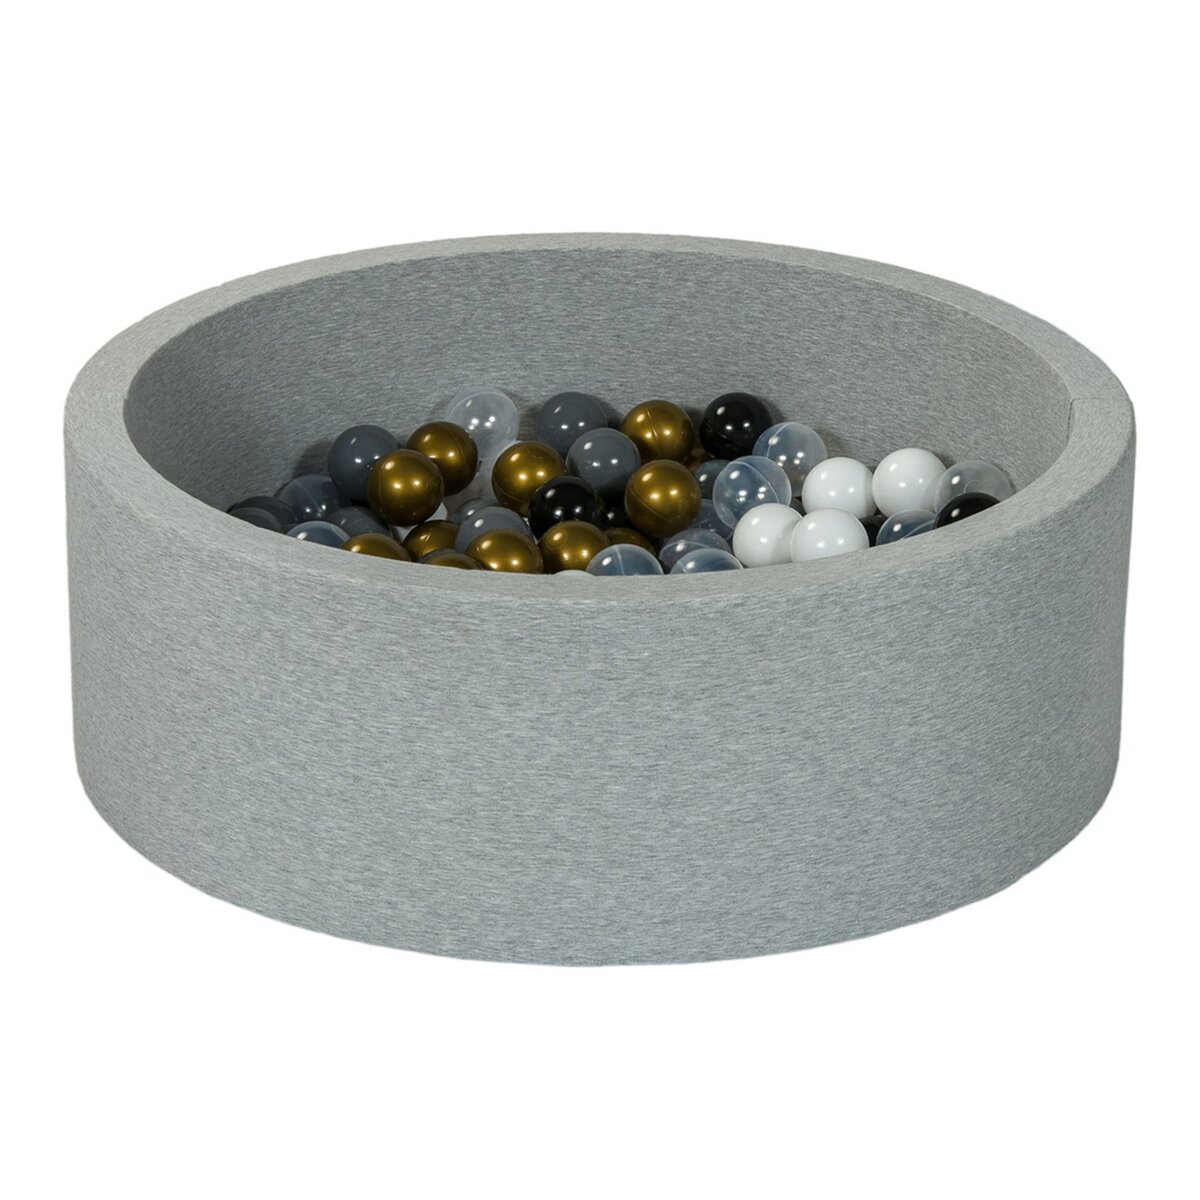  Piscine à balles Aire de jeu + 150 balles noir, blanc, transparent, or, gris